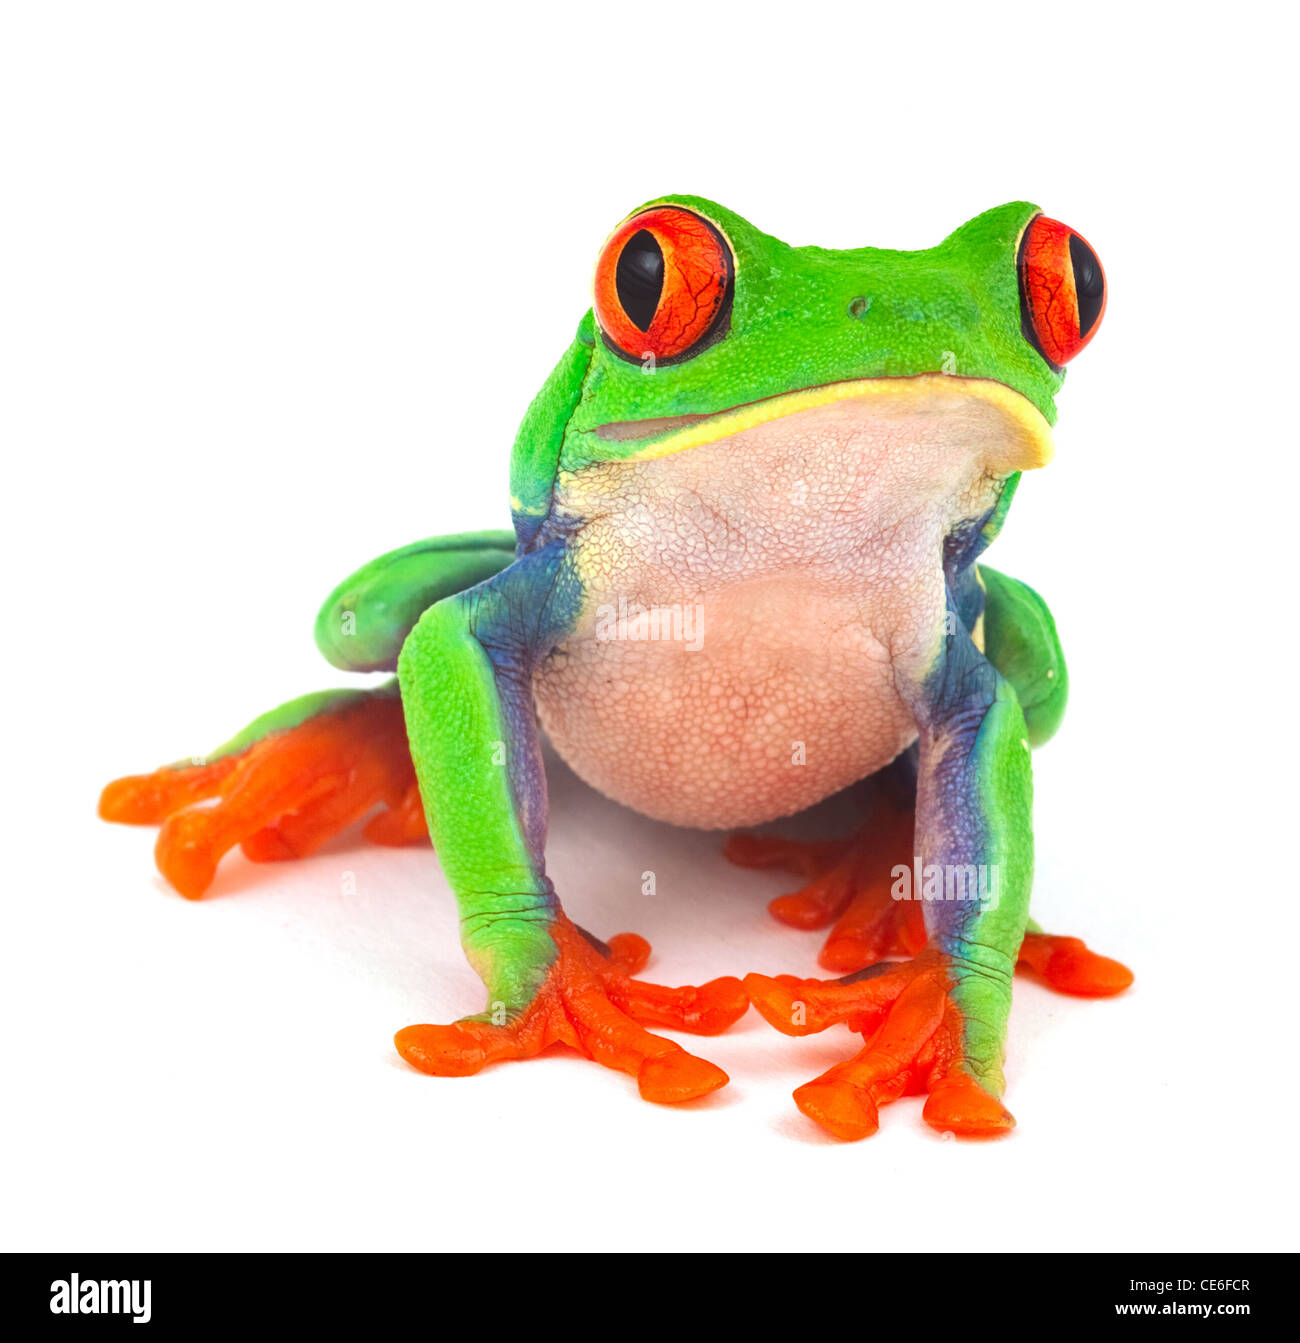 Les yeux rouges isolés macro rainette grenouille exotique animal curieux des couleurs vives lumineuses Banque D'Images